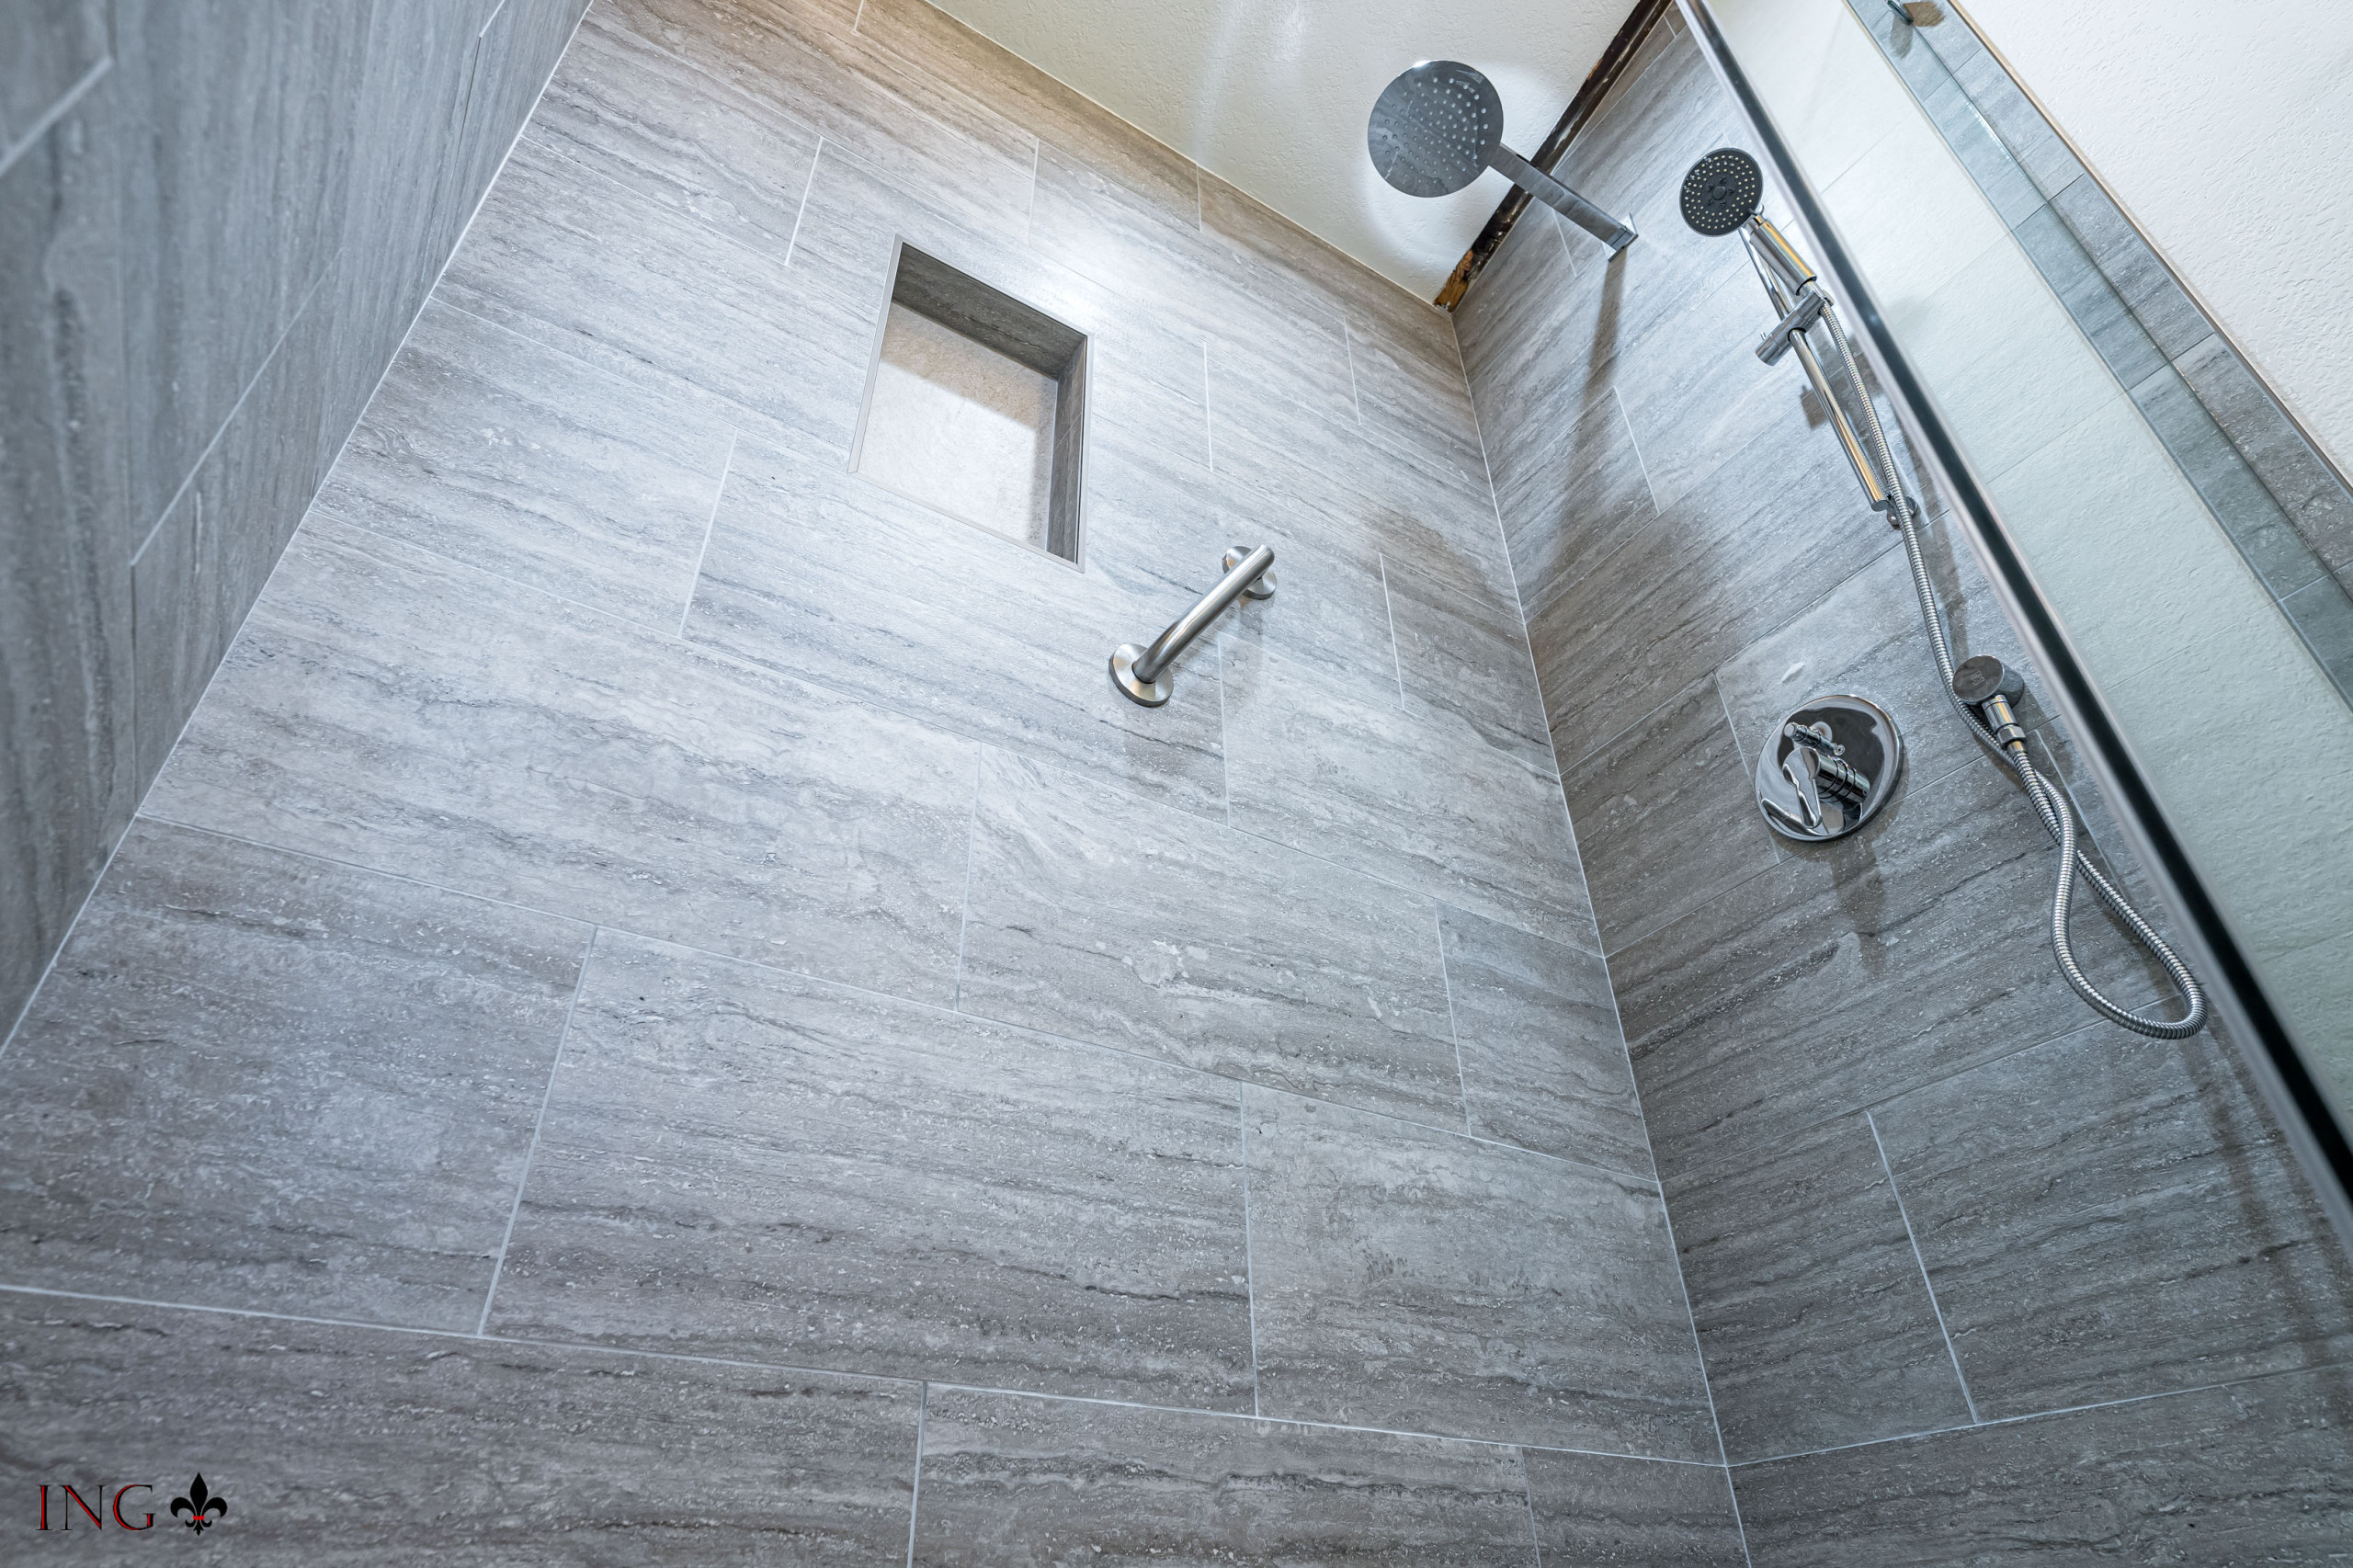 Shower Tile, Fixtures & Faucets